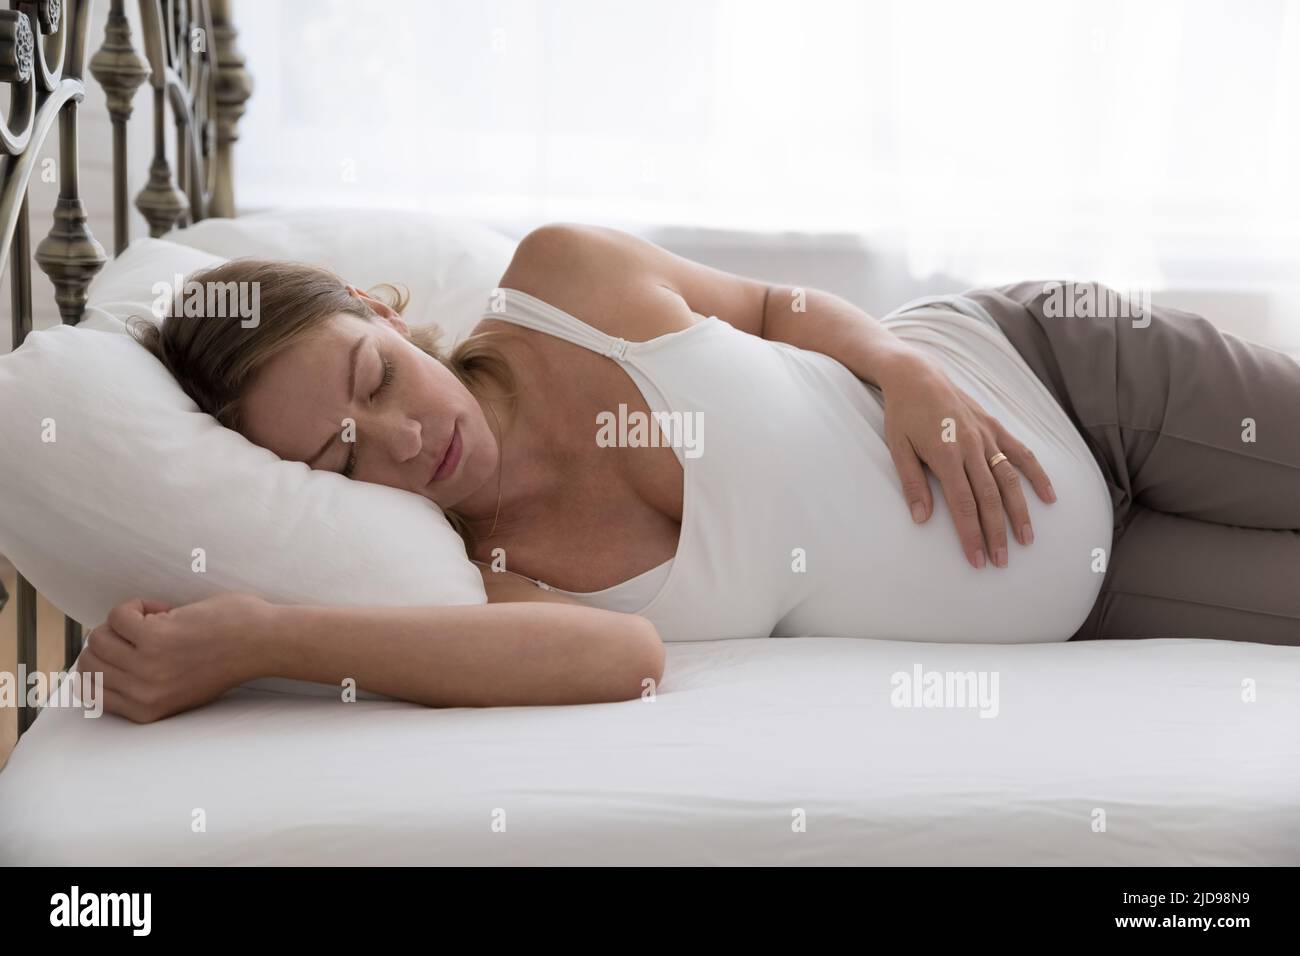 Die Schwangere schläft im Bett und sieht erschöpft aus, weil sie eine harte Schwangerschaft hat Stockfoto